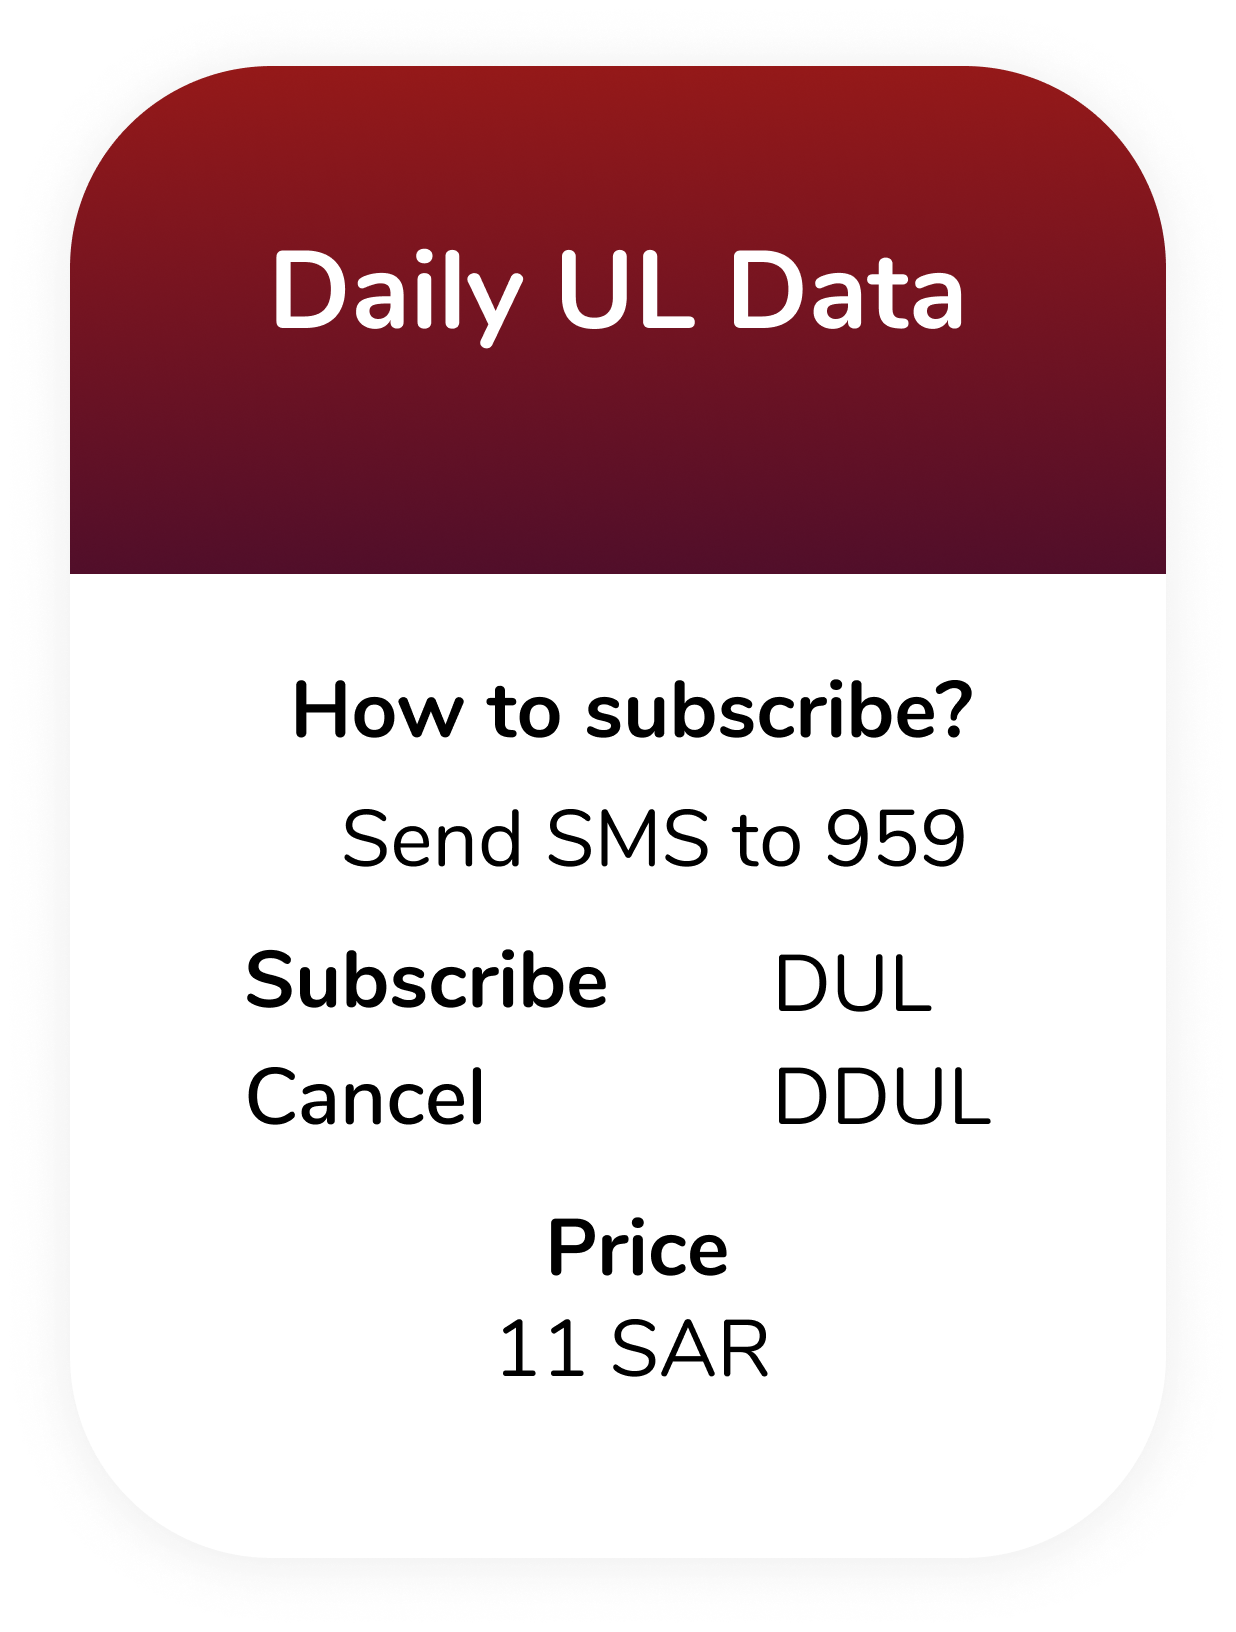 Daily UL DATA